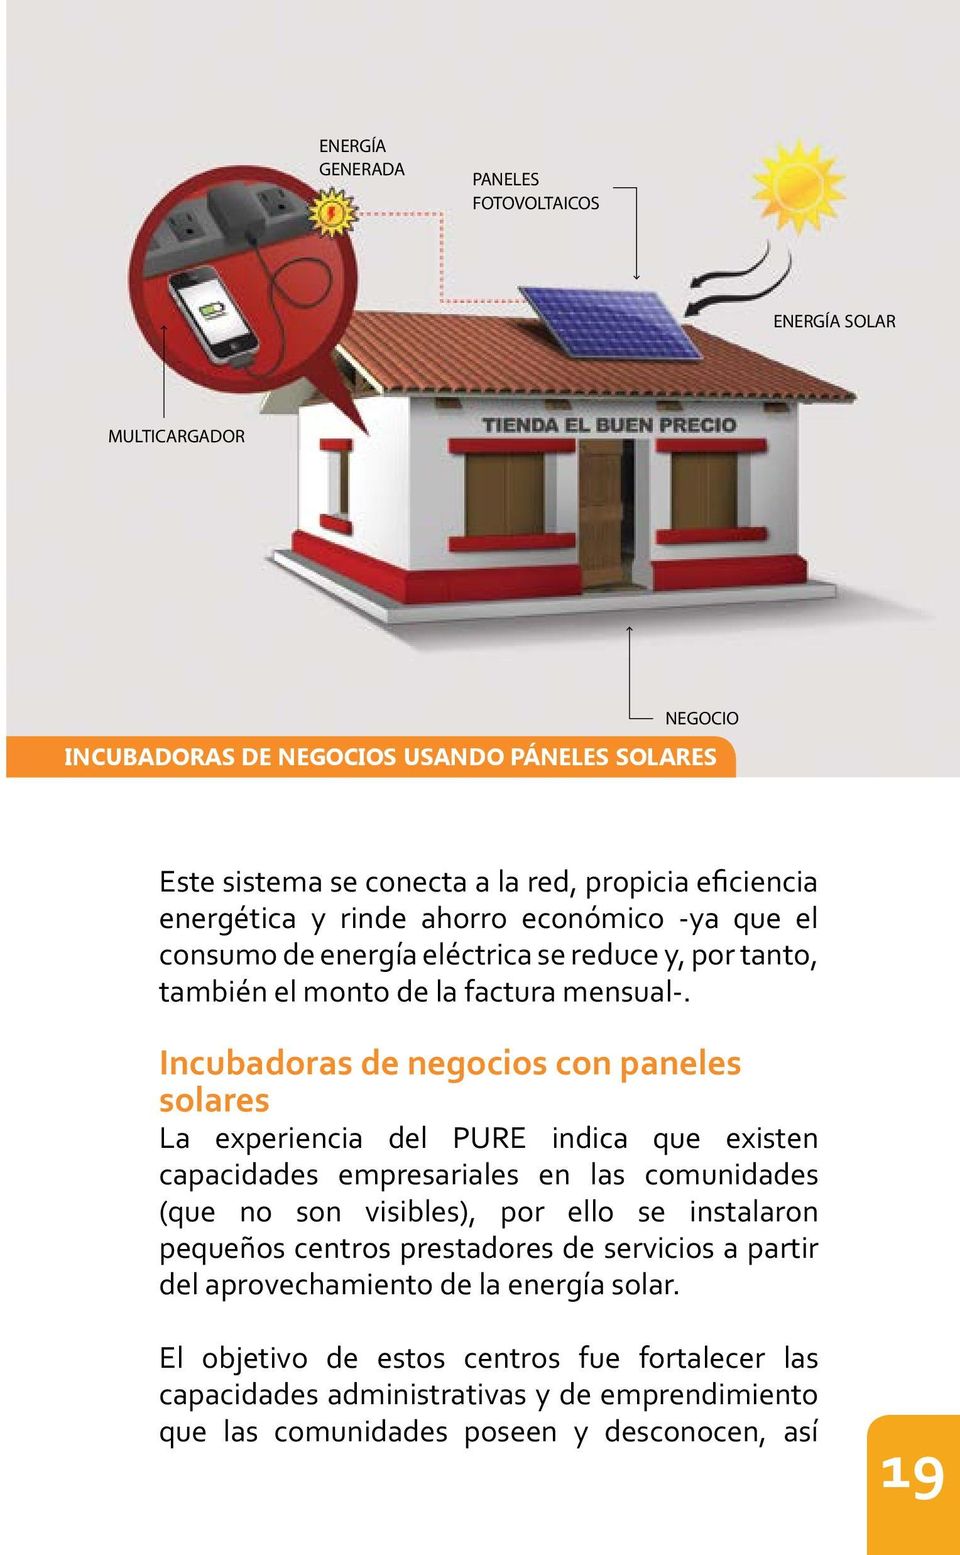 Incubadoras de negocios con paneles solares capacidades empresariales en las comunidades